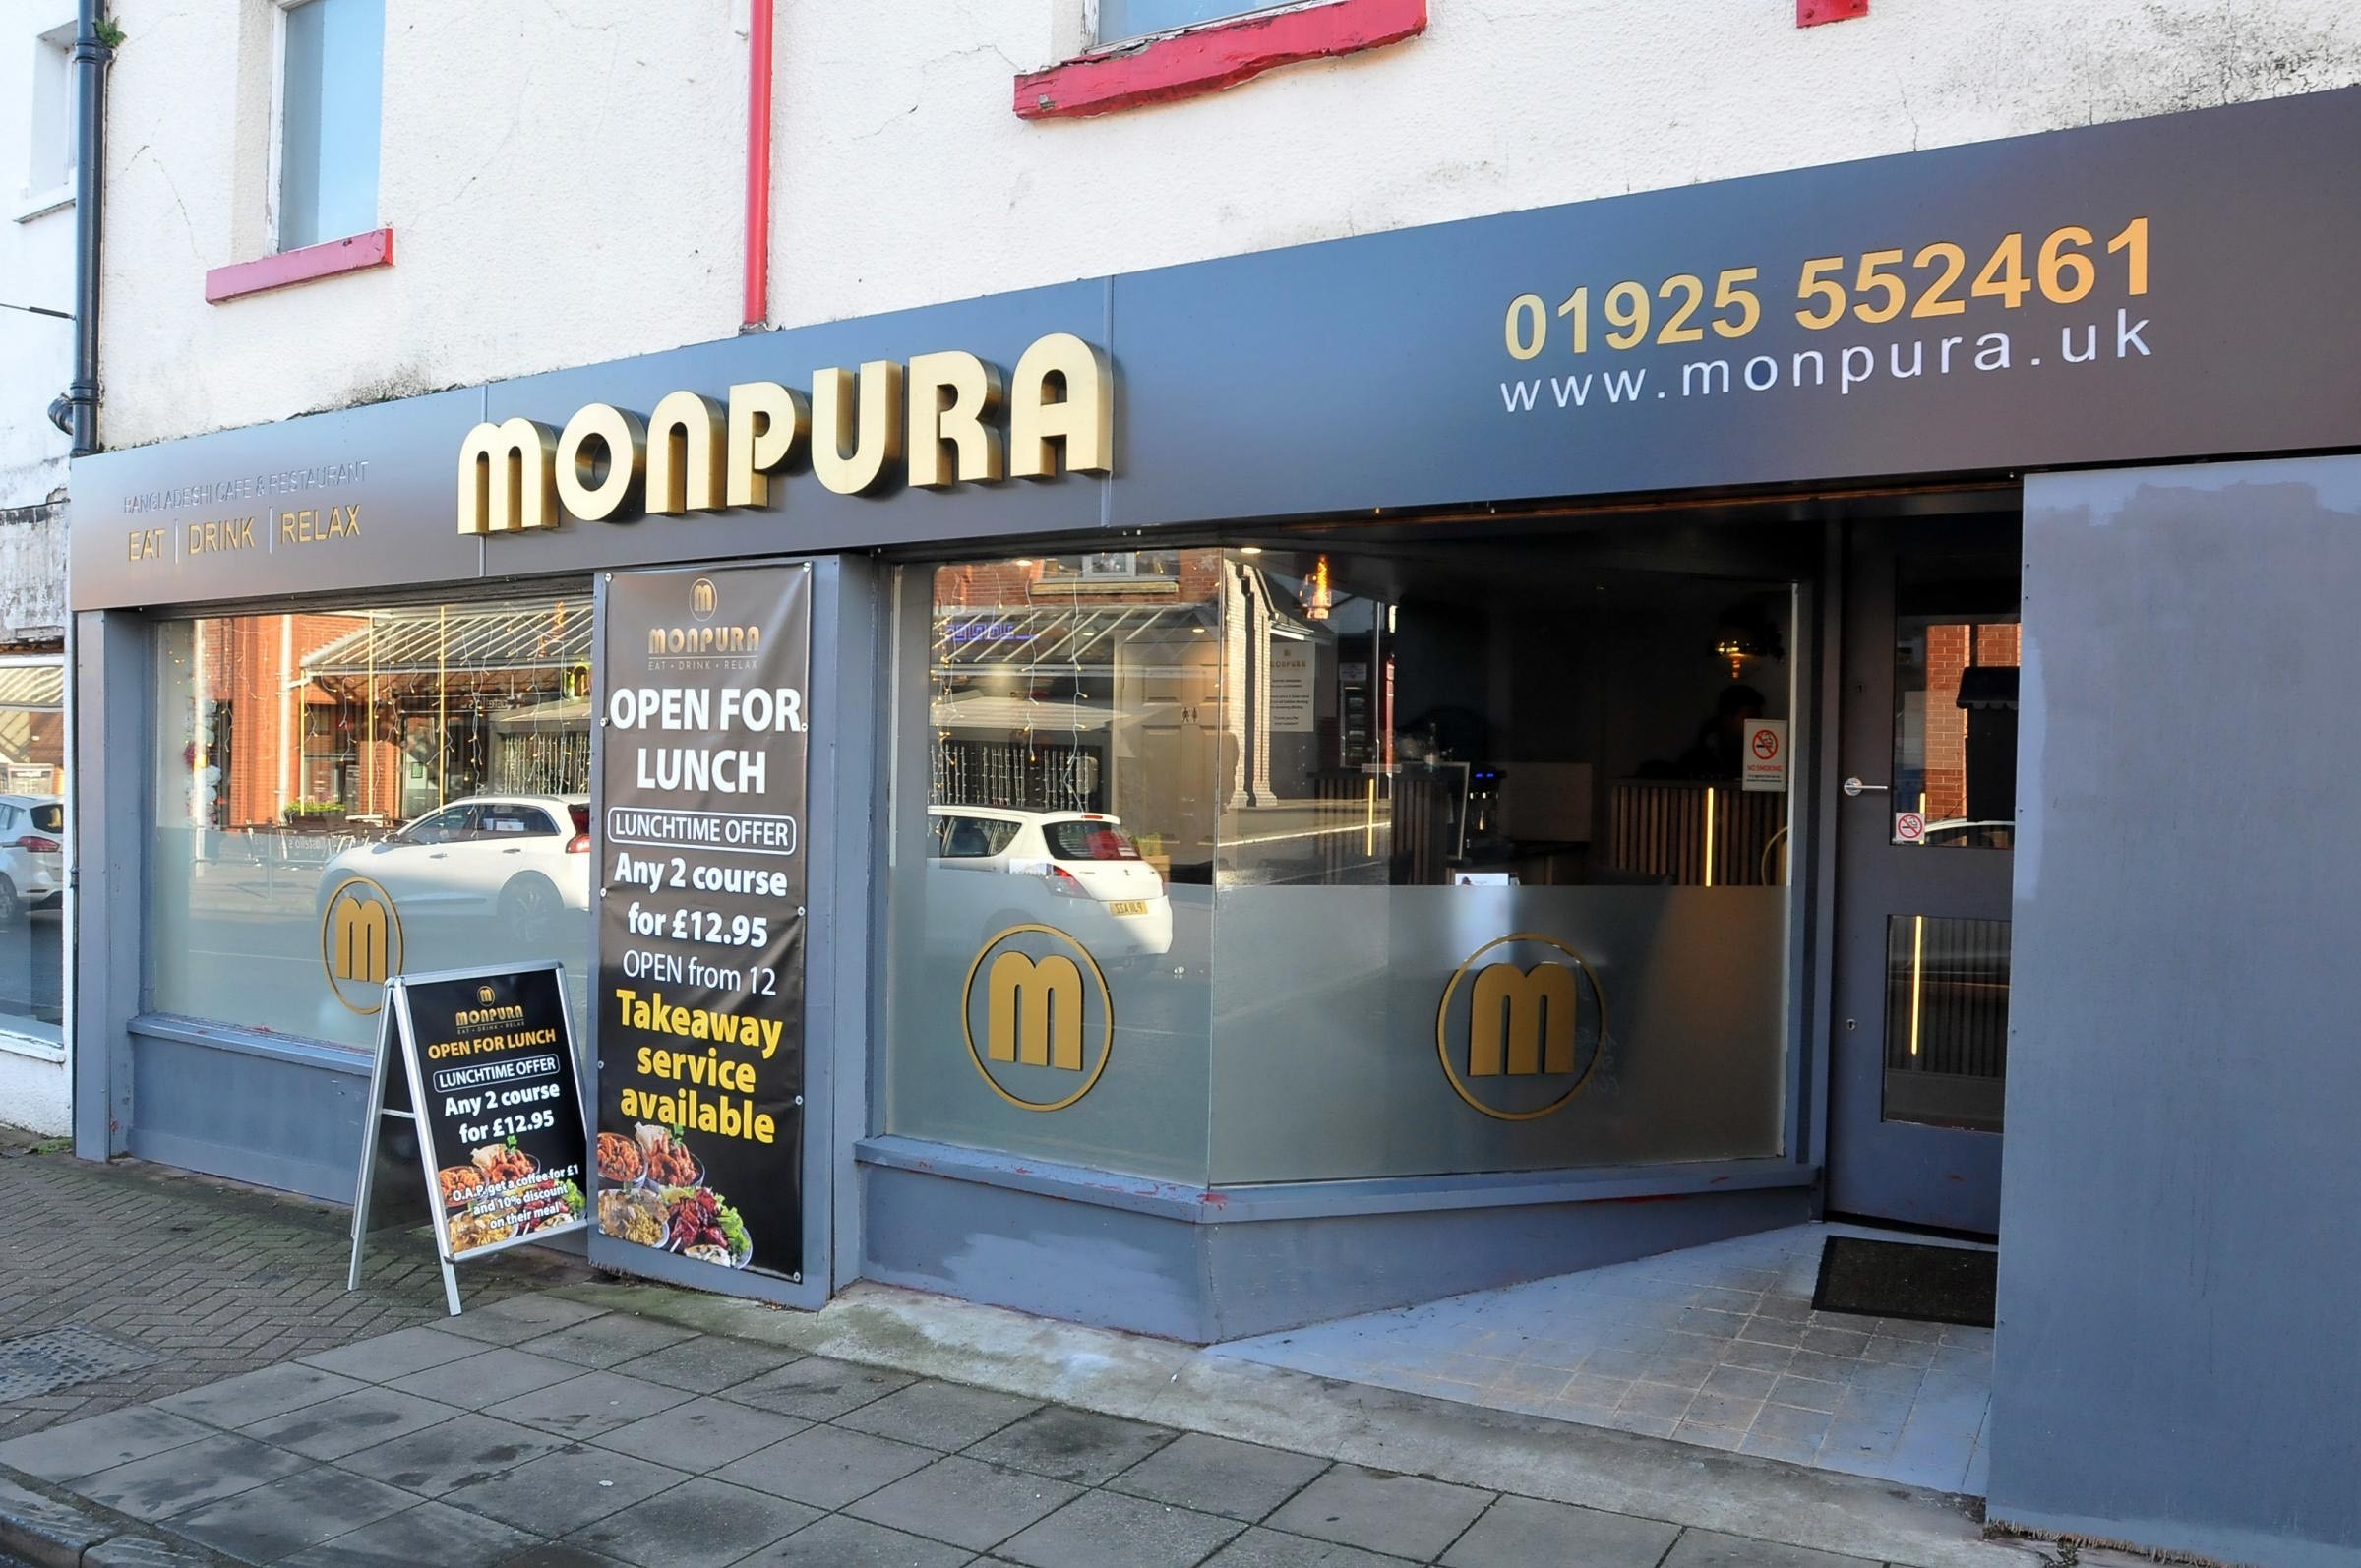 Monpura is on Walton Road in Stockton Heath